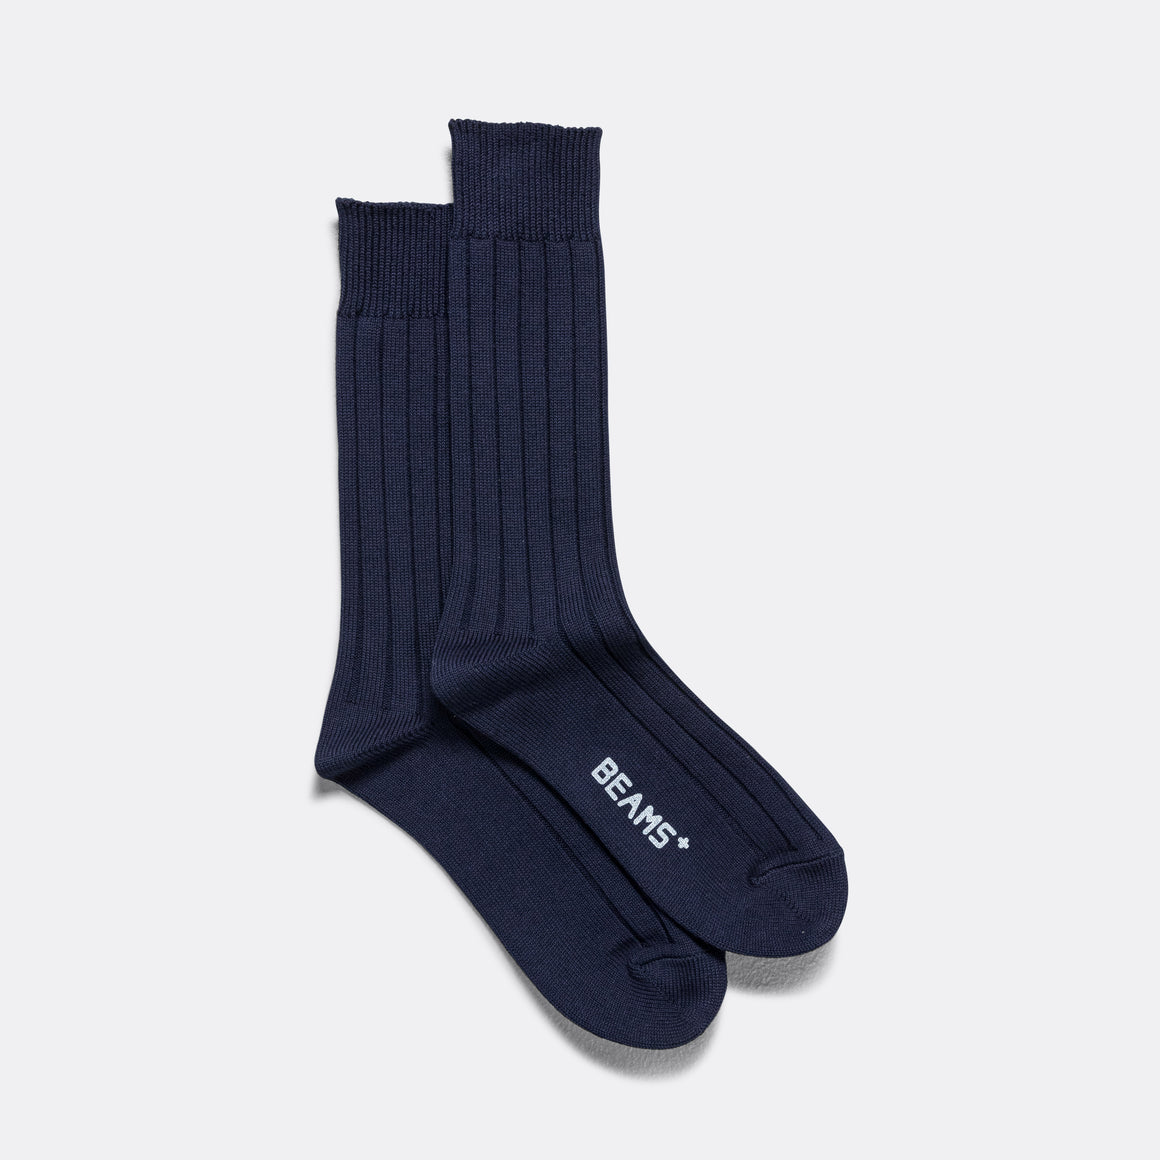 Solid Ribs Socks - Navy